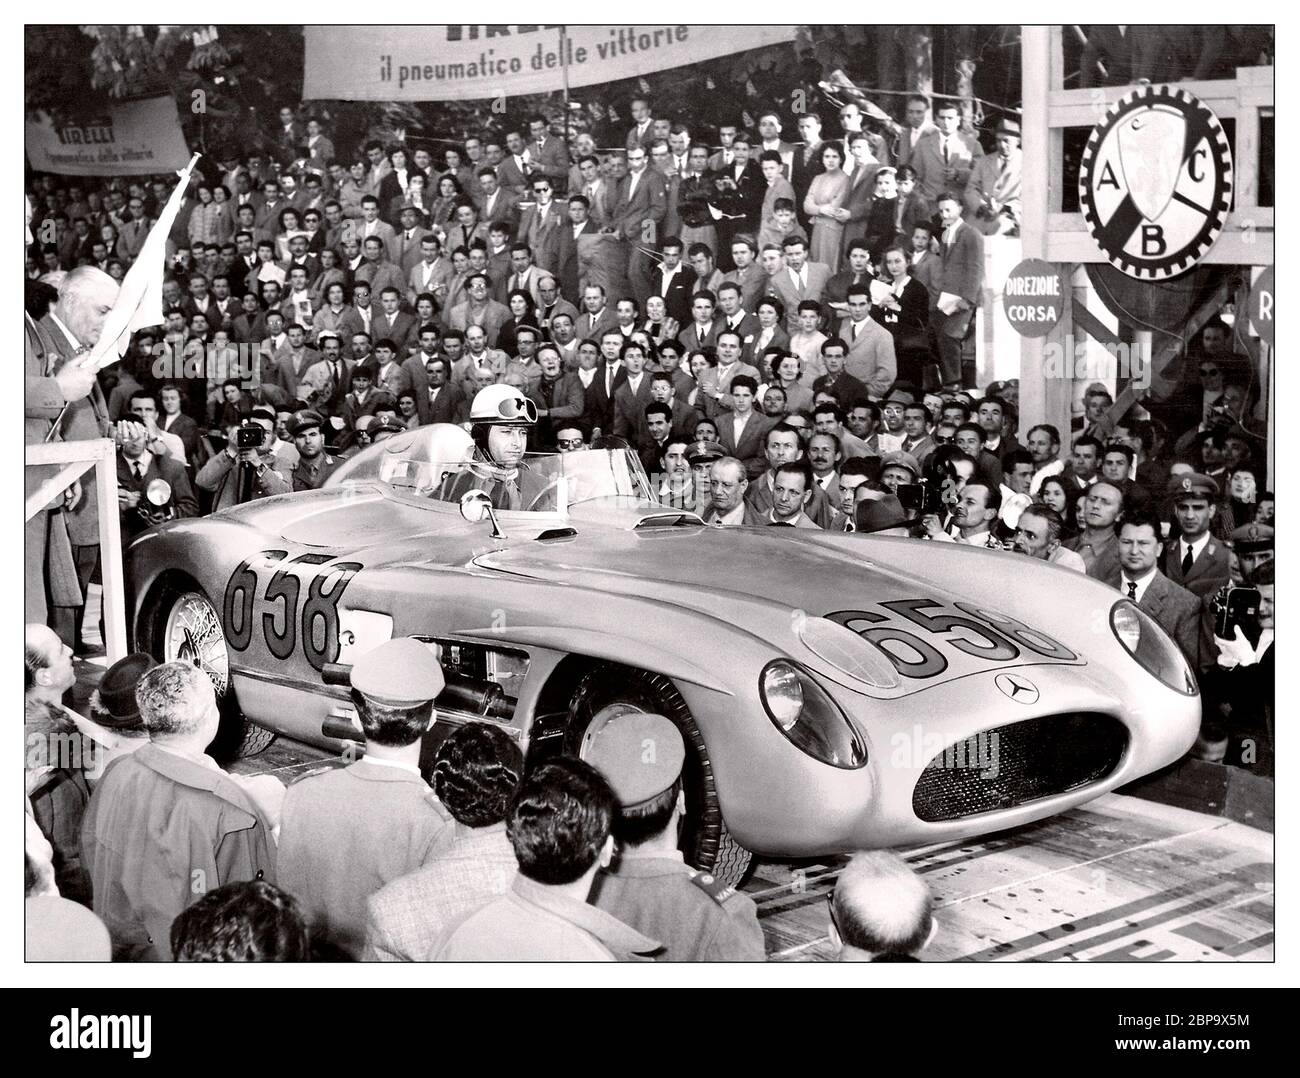 1955 Mercedes-Benz 300 SLR mit Juan Manuel Fangio beim Start der Mille Miglia in Italien Dieses Rennen gewann Mercedes-Benz Werksfahrer Stirling Moss mit Hilfe seines Navigators Denis Jenkinson. Sie absolvierten die 992-Meilen-Distanz in 10 Stunden, 7 Minuten und 48 Sekunden – eine Durchschnittsgeschwindigkeit von 99 km/h (160 mph). Die beiden Engländer endeten 32 Minuten vor ihrem zweitplatzierten Teamkollegen Juan Manuel Fangio. Die Route basierte auf einer Rundreise zwischen Brescia und Rom, mit Start/Ziel, in Brescia Stockfoto